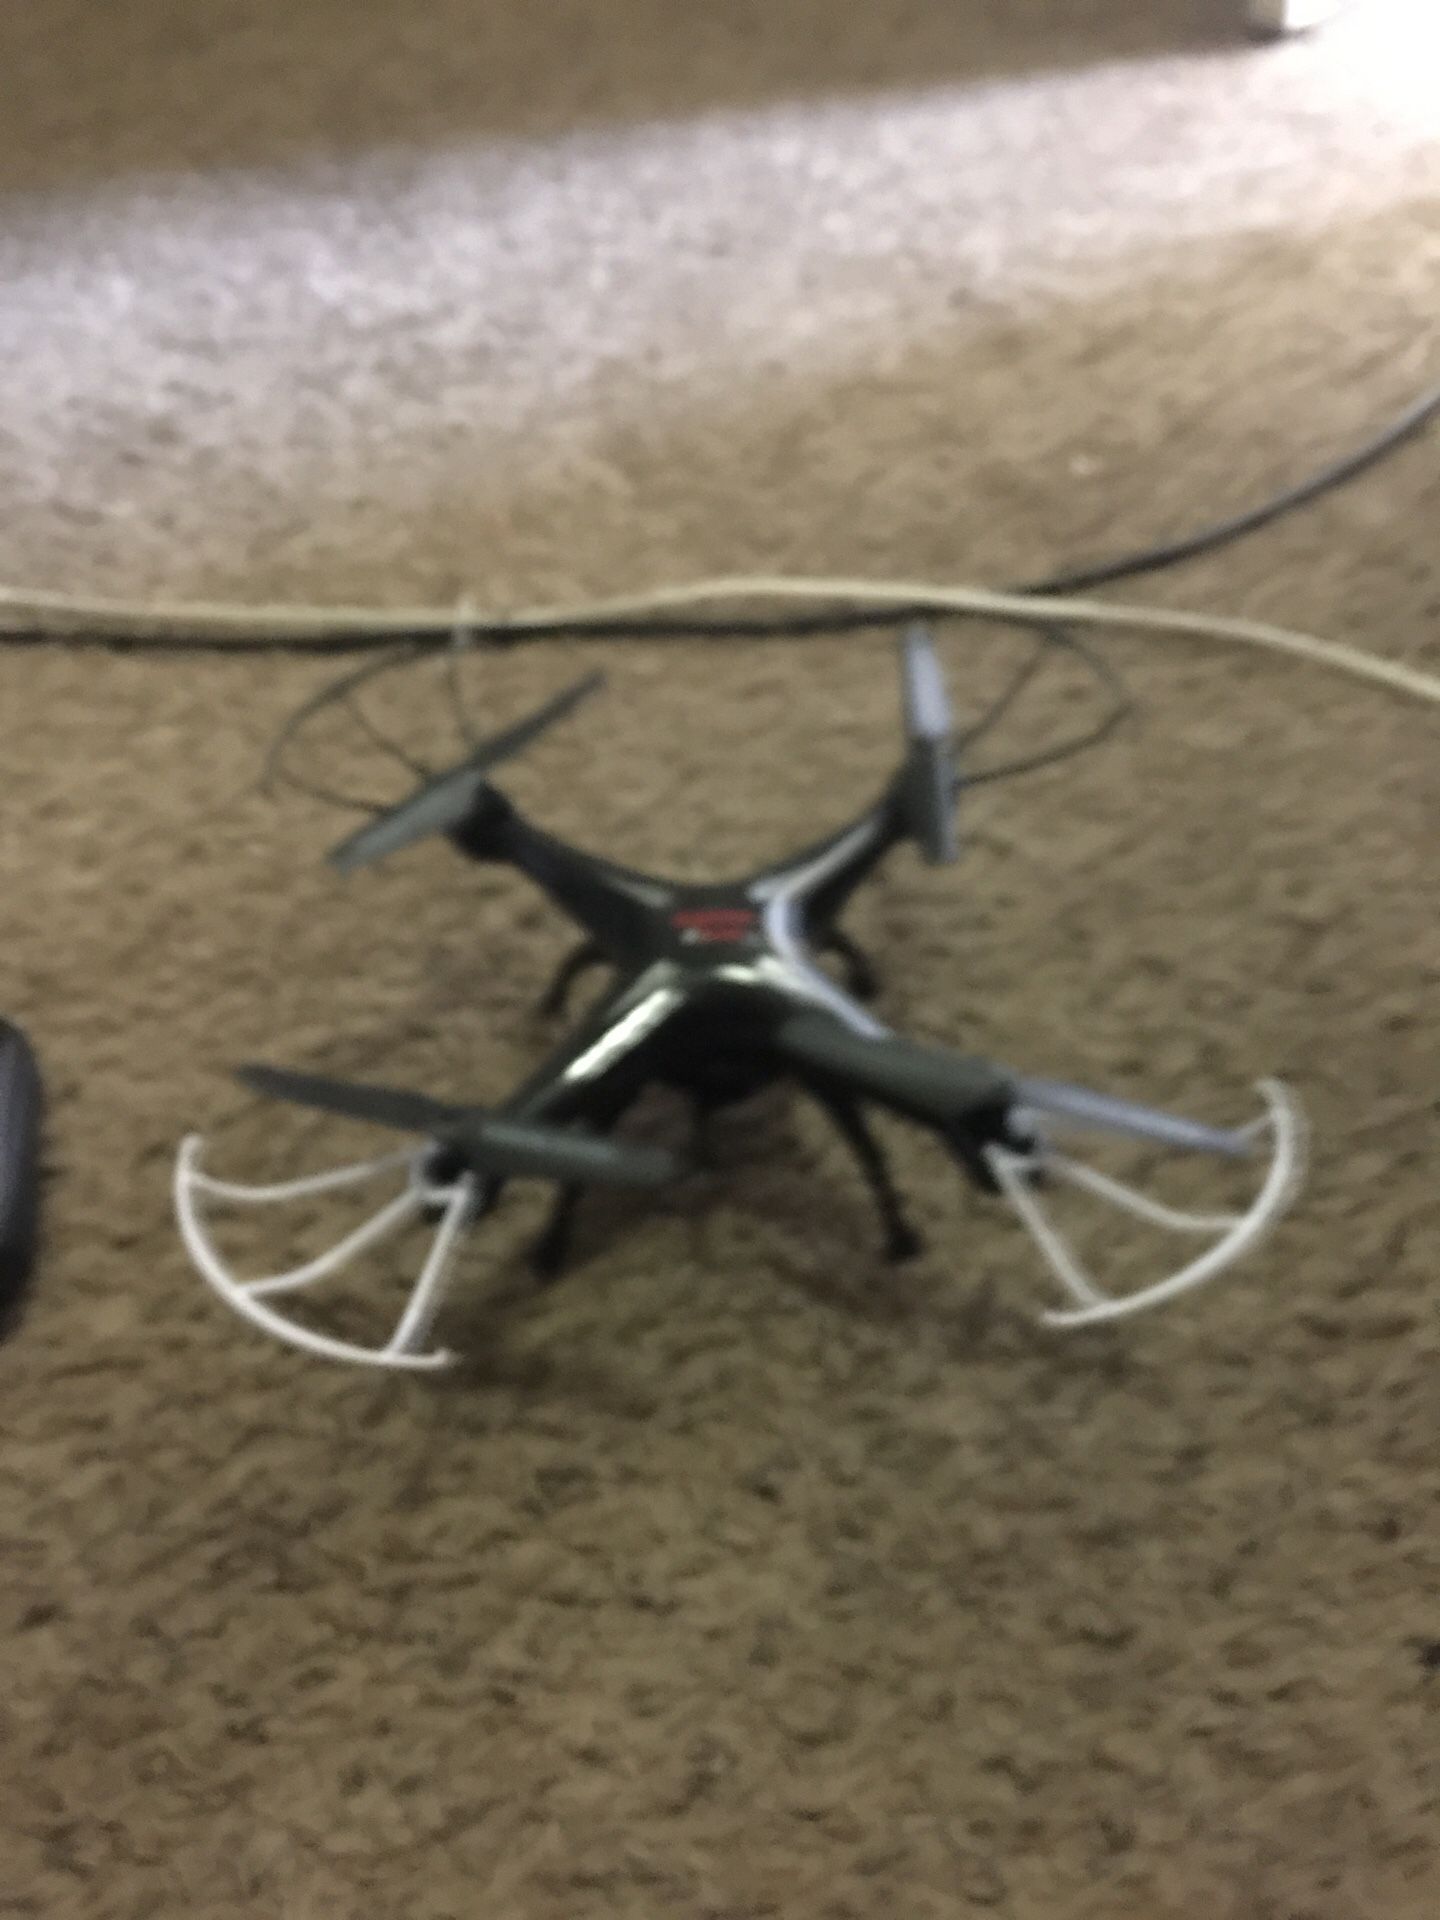 Syma x5sw drone